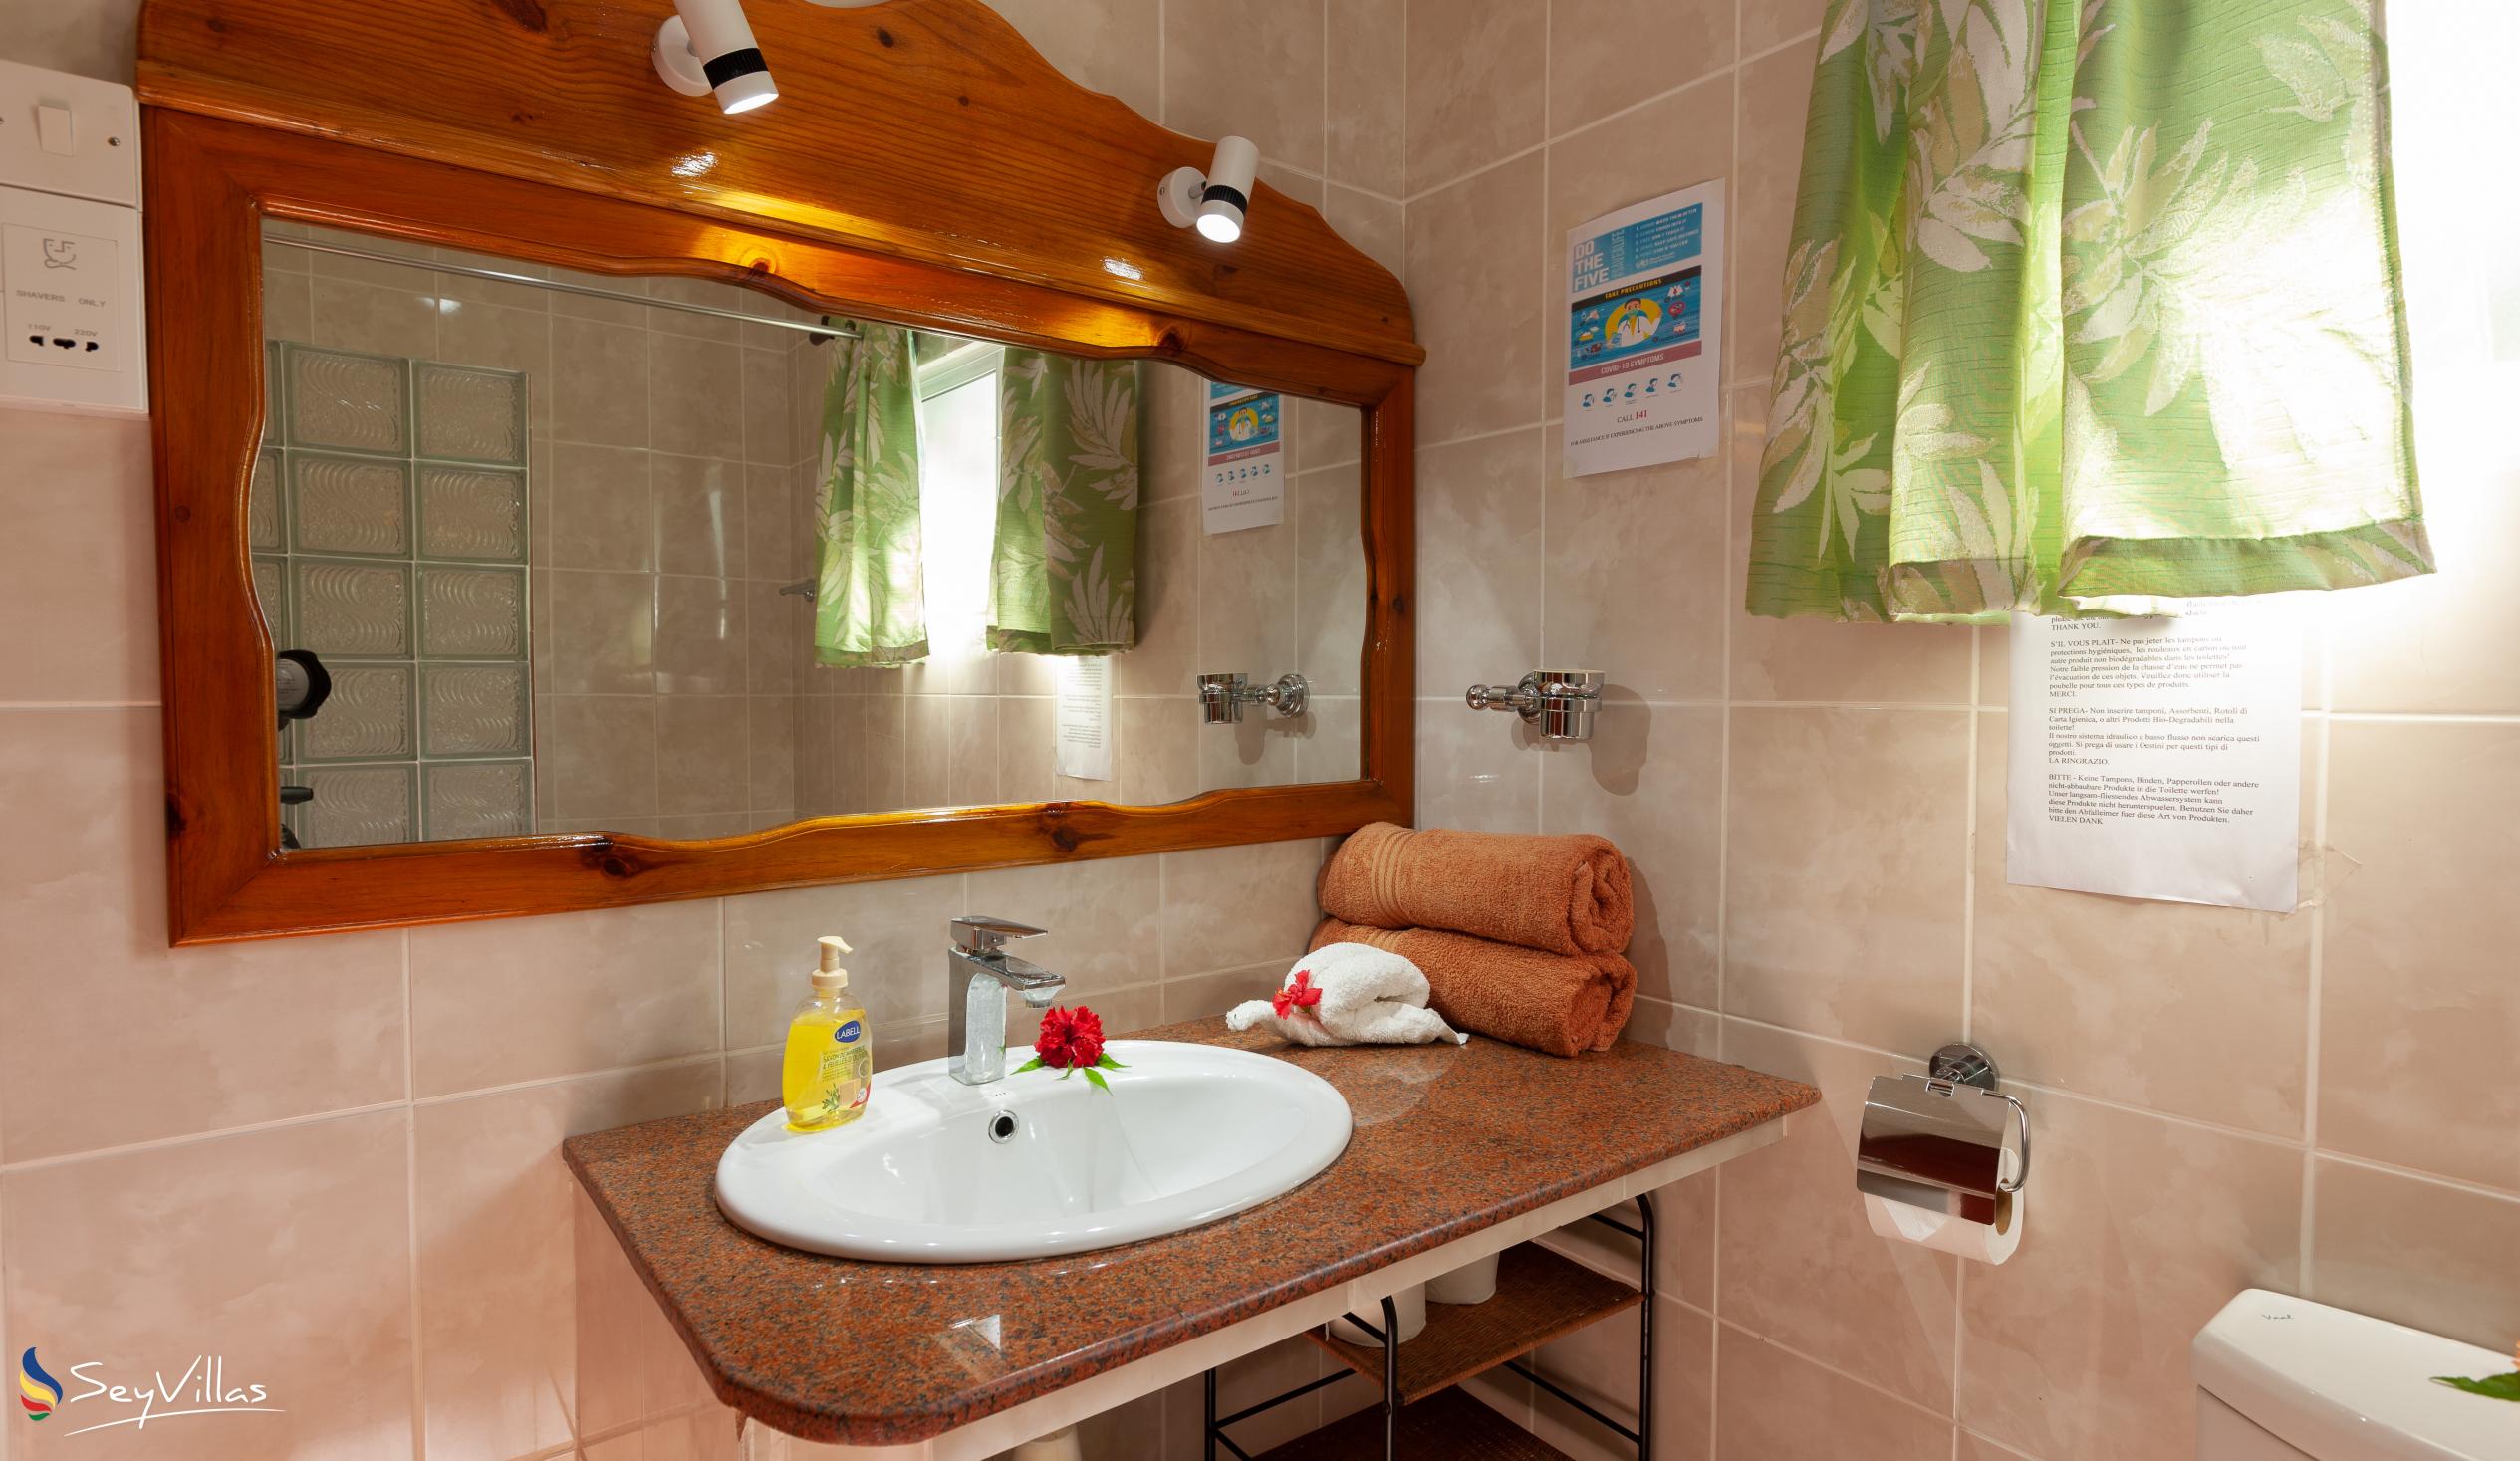 Photo 58: Pension Hibiscus - Maison Eliza - Standard Room - La Digue (Seychelles)